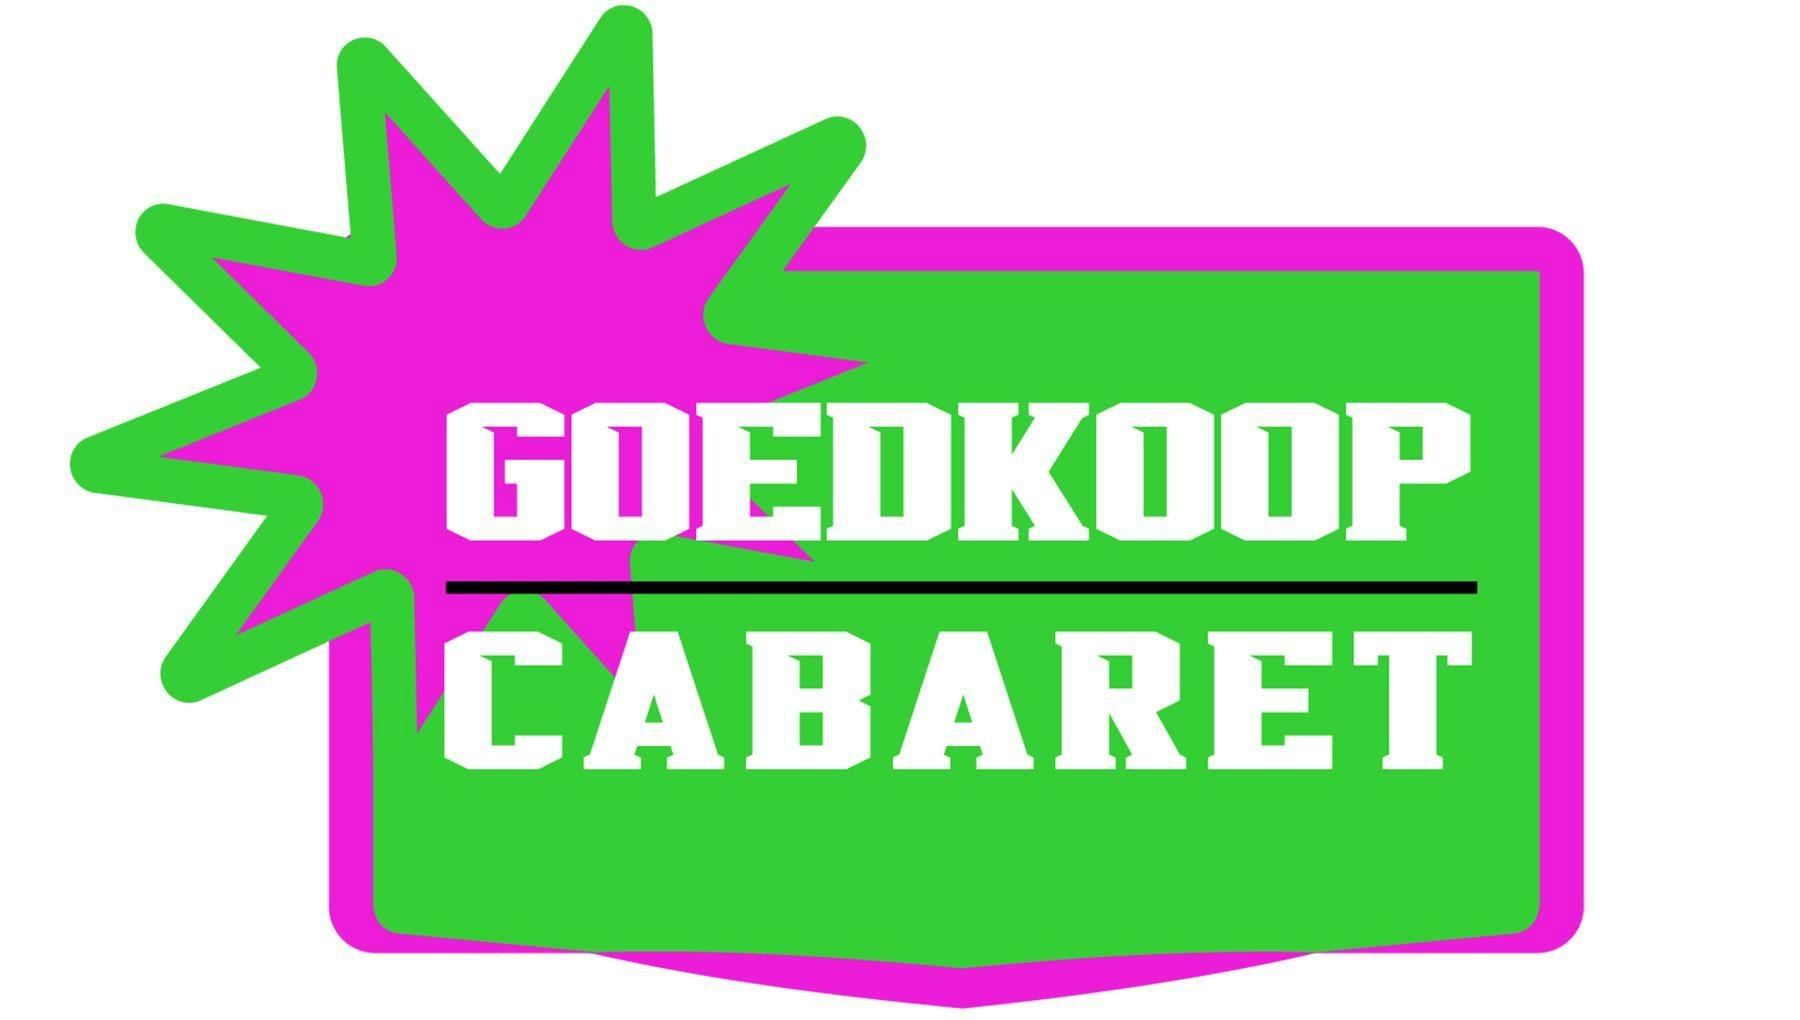 Goedkoop Cabaret